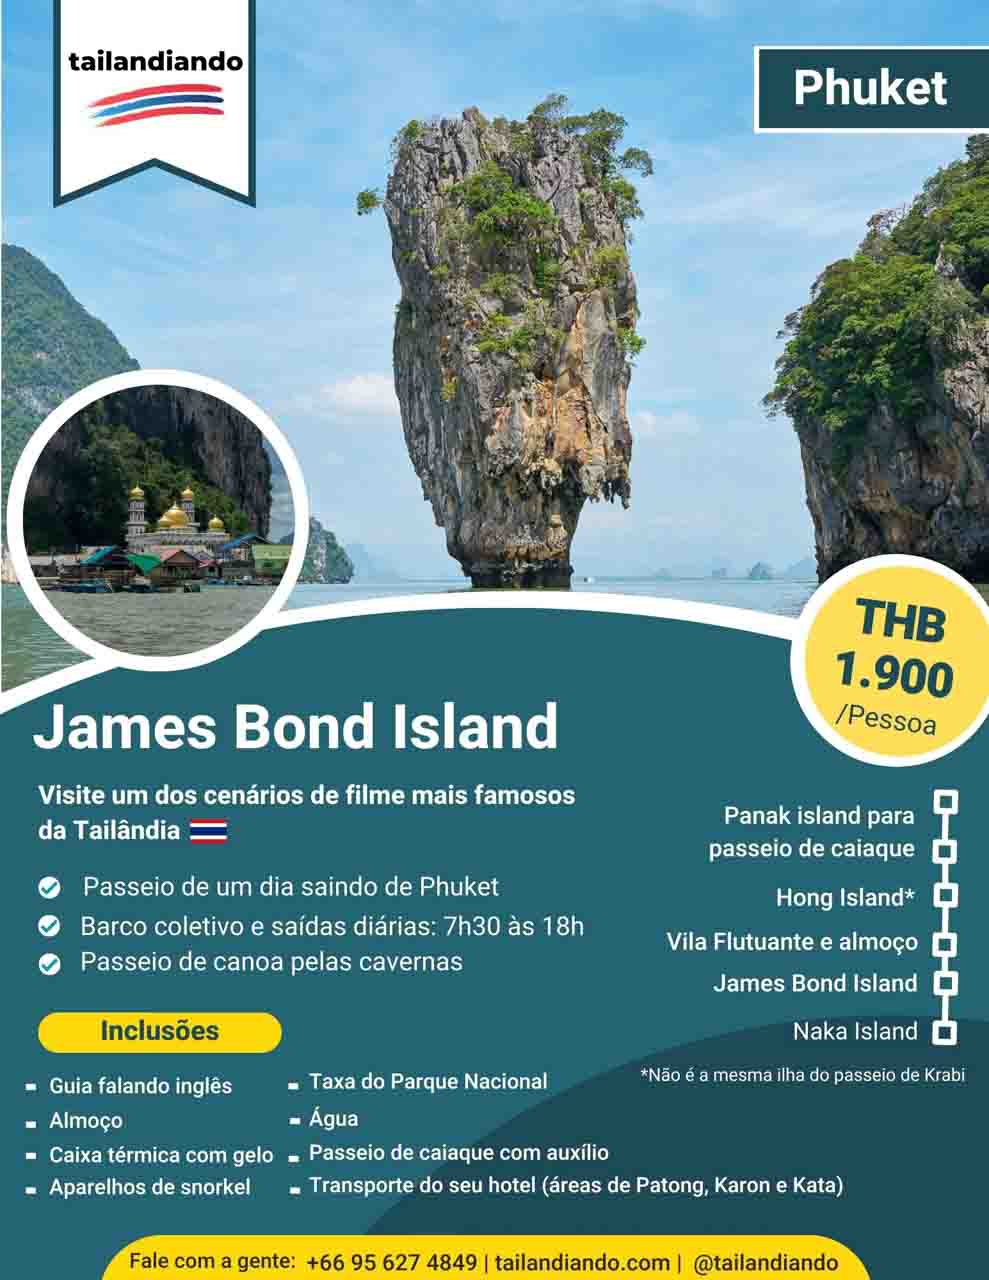 Passeio para James Bond Island - Passeios em Phuket - o que fazer nas praias da Tailandia